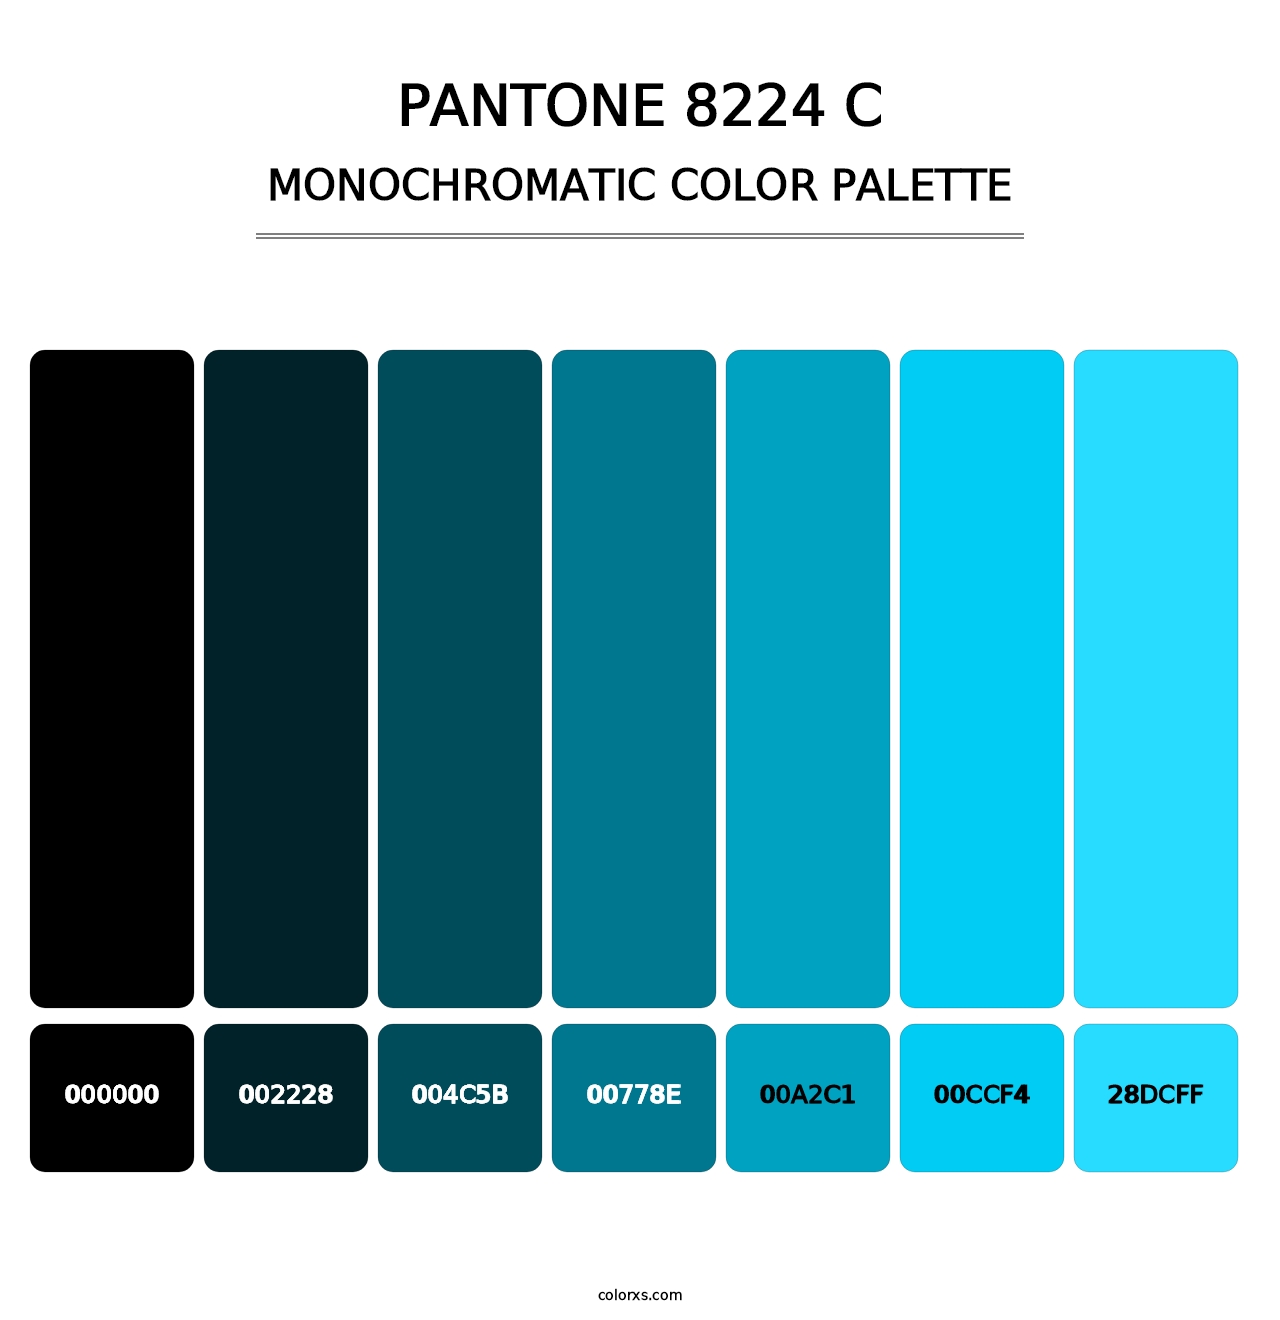 PANTONE 8224 C - Monochromatic Color Palette